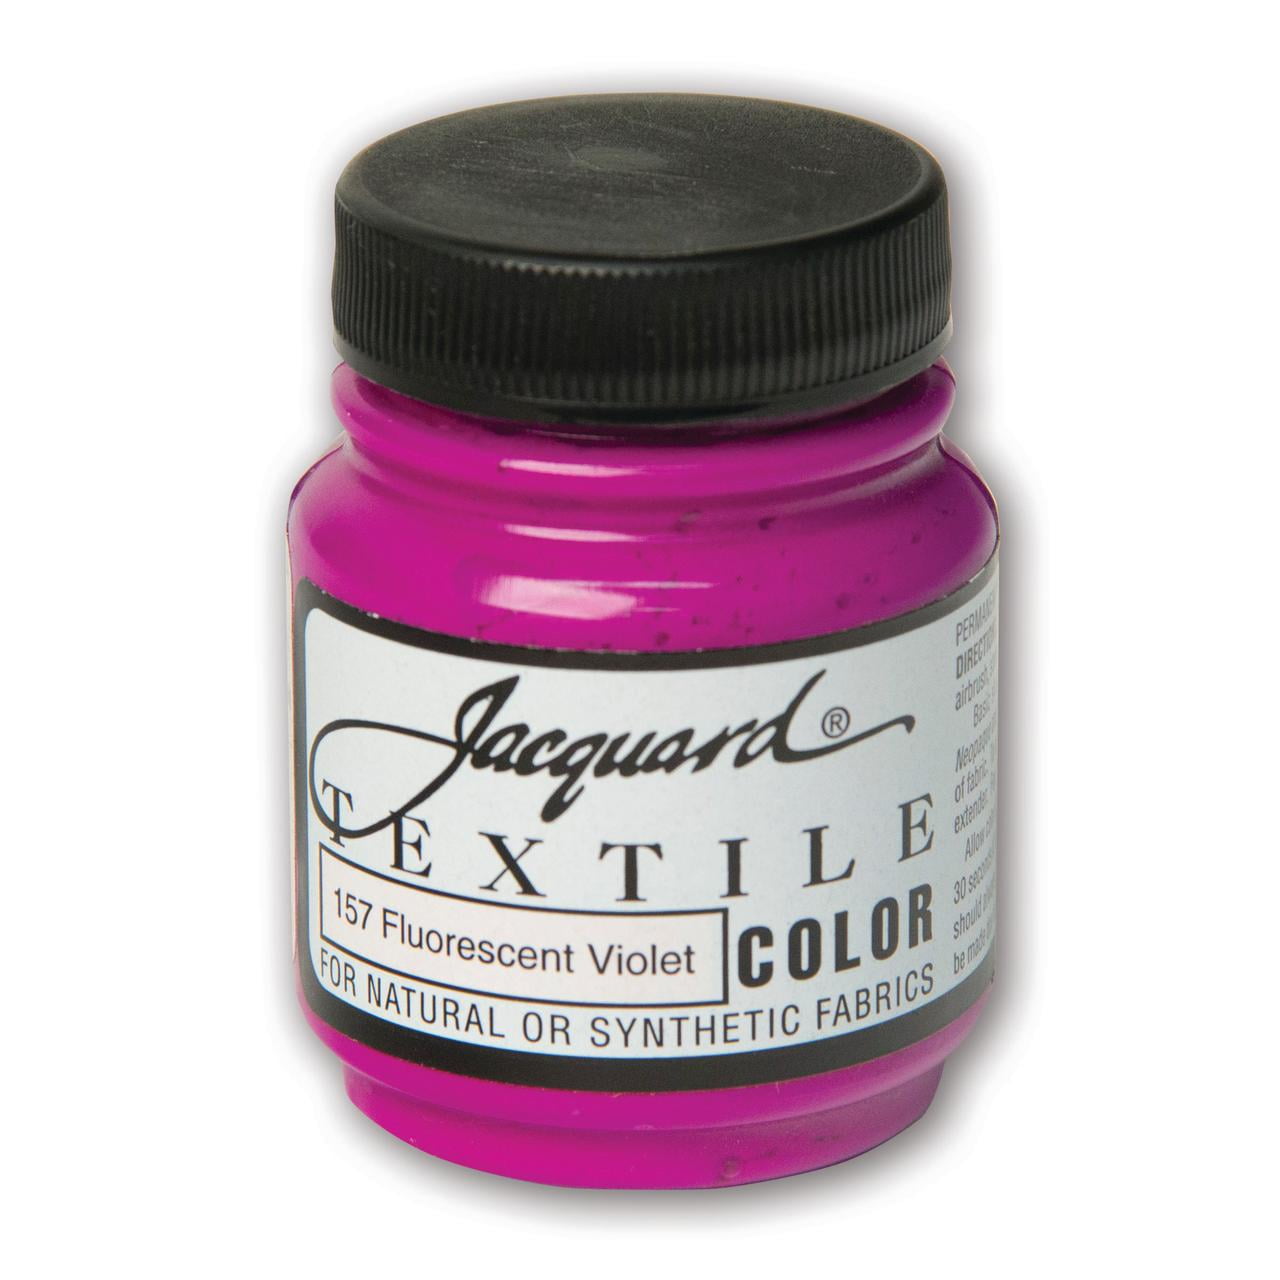 Jacquard Textile Color Fabric Paint 2.25oz Fluorescent Violet